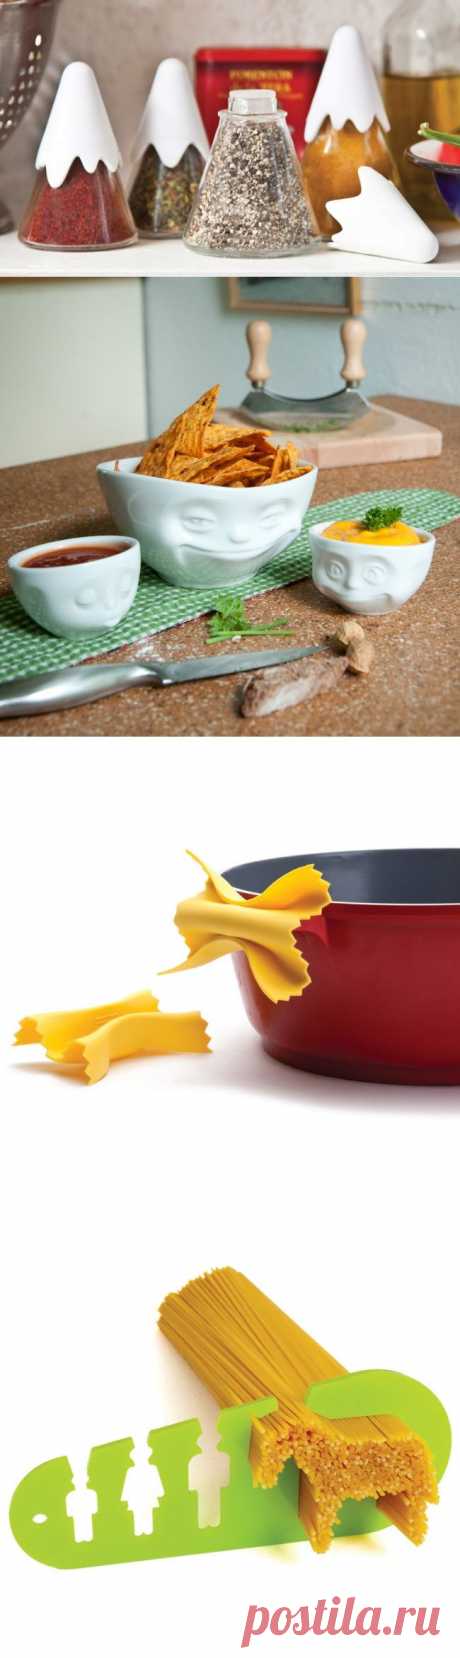 20 полезных мелочей, которые оживят вашу кухню